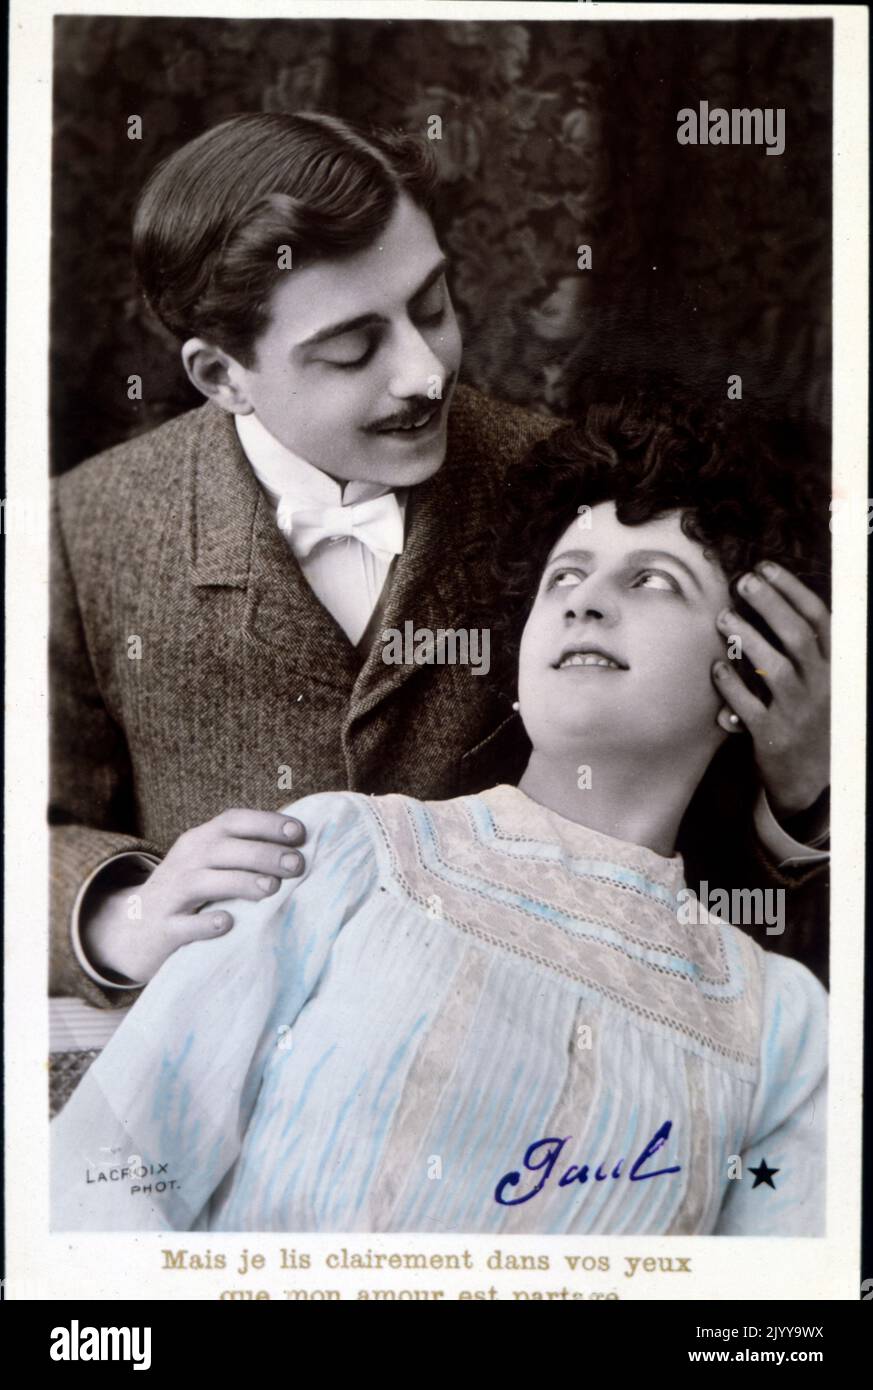 Schwarz-Weiß-Foto eines Mannes und einer Frau, die sich gegenseitig ansahen, mit romantischer Beschriftung: „Aber ich kann mit deinen Augen sehen, dass wir verliebt sind“. Herausgegeben von La Croix. Stockfoto